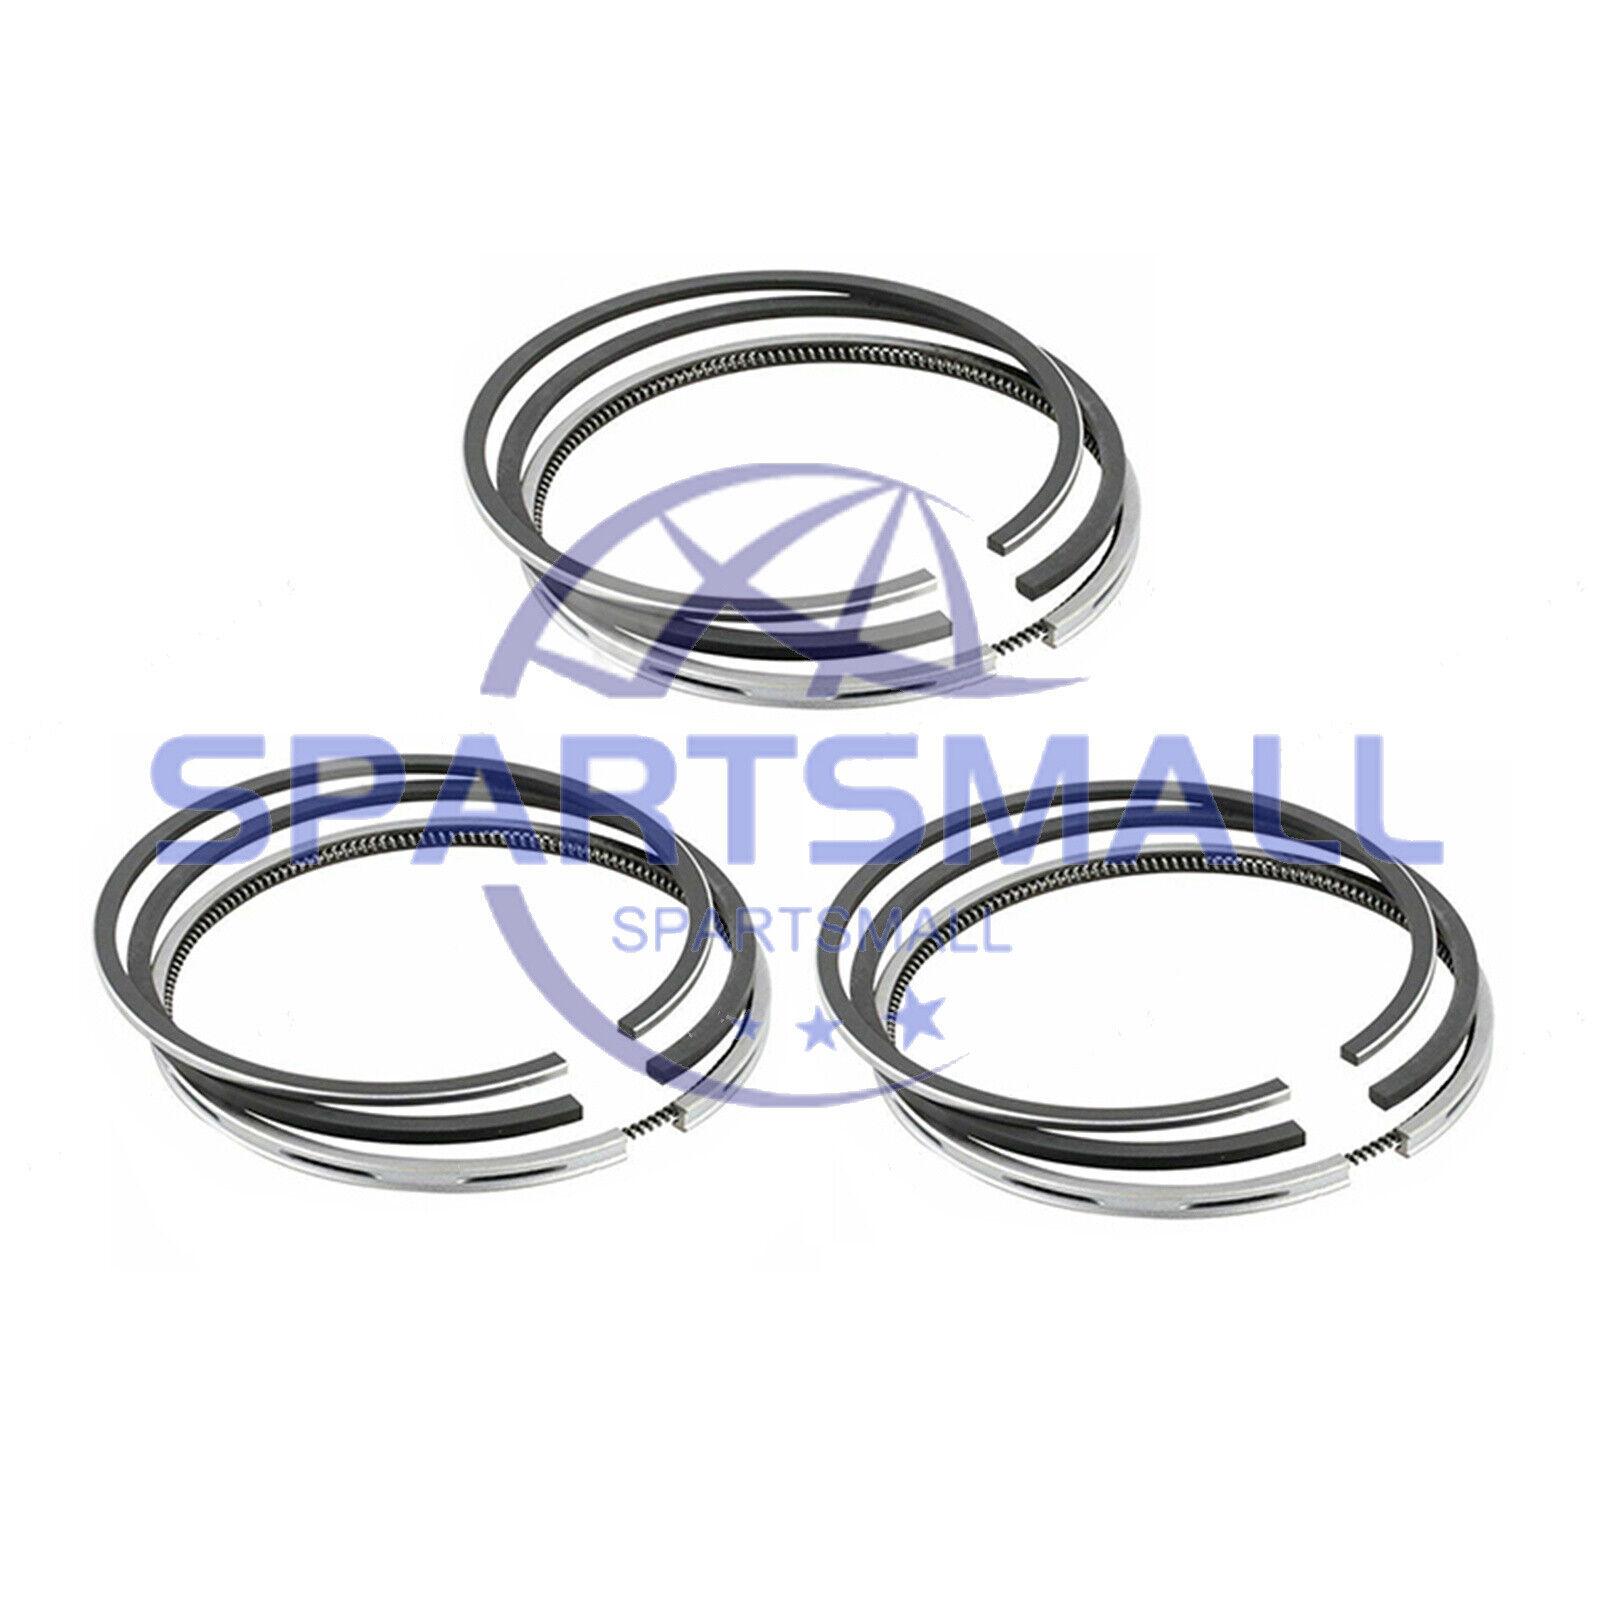 3 Sets 3TNV84 Piston Rings for Yanmar John Deere 4105 7500 7700